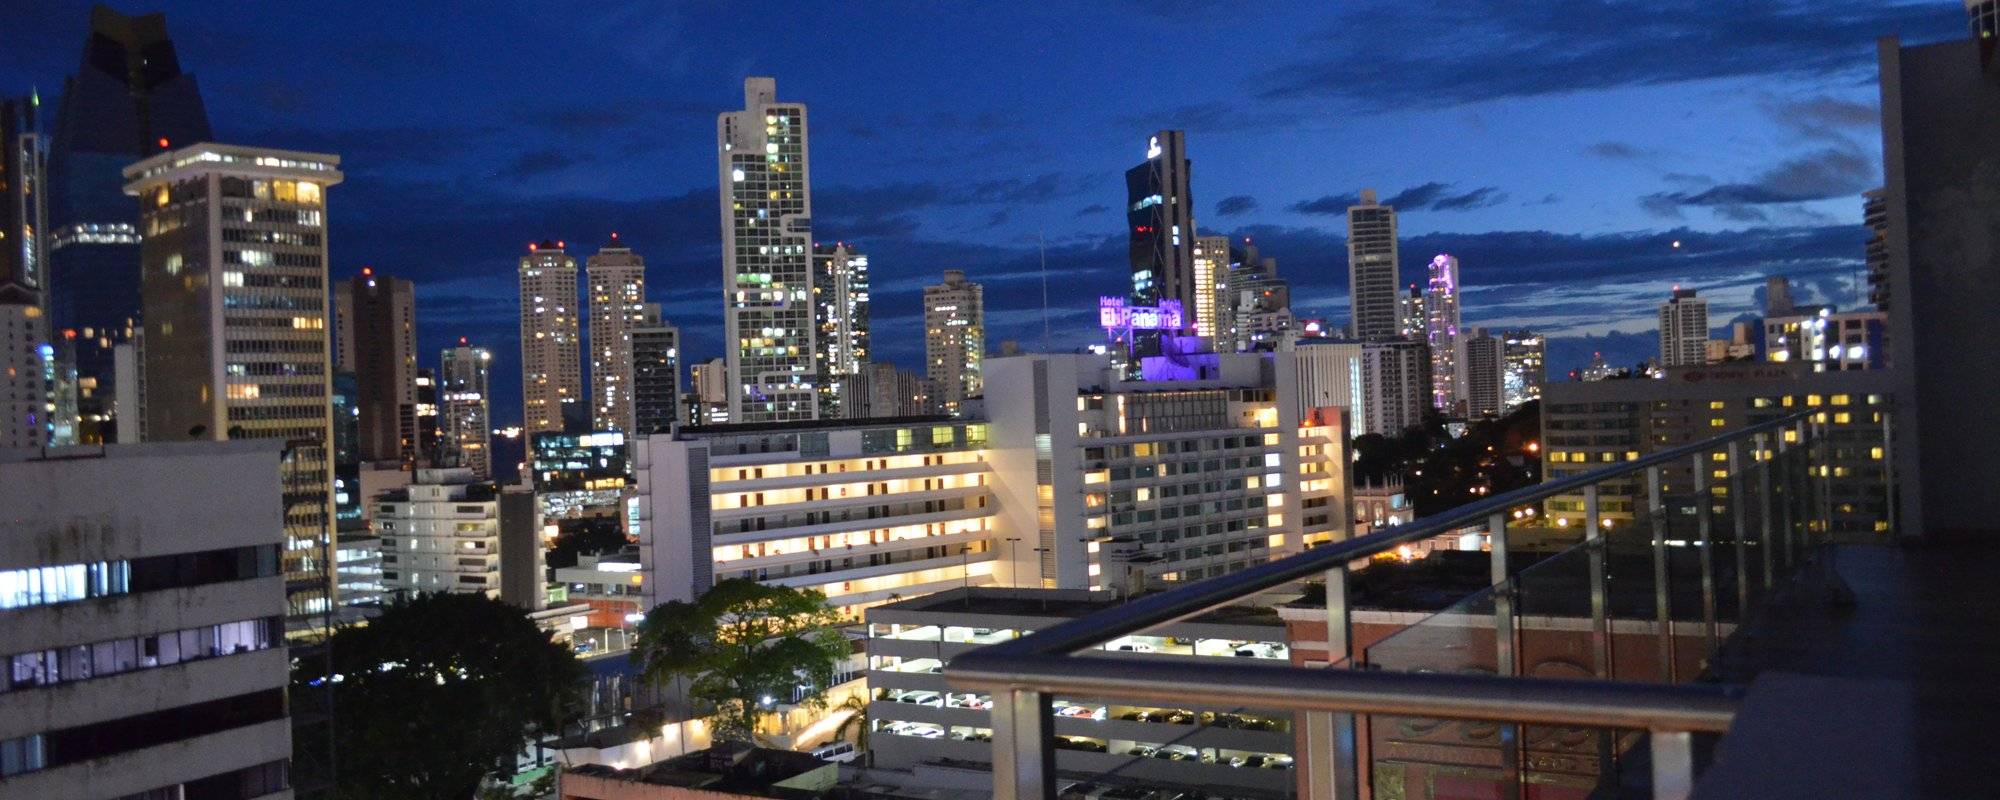 Panama Series: Panama City's Skyline at night